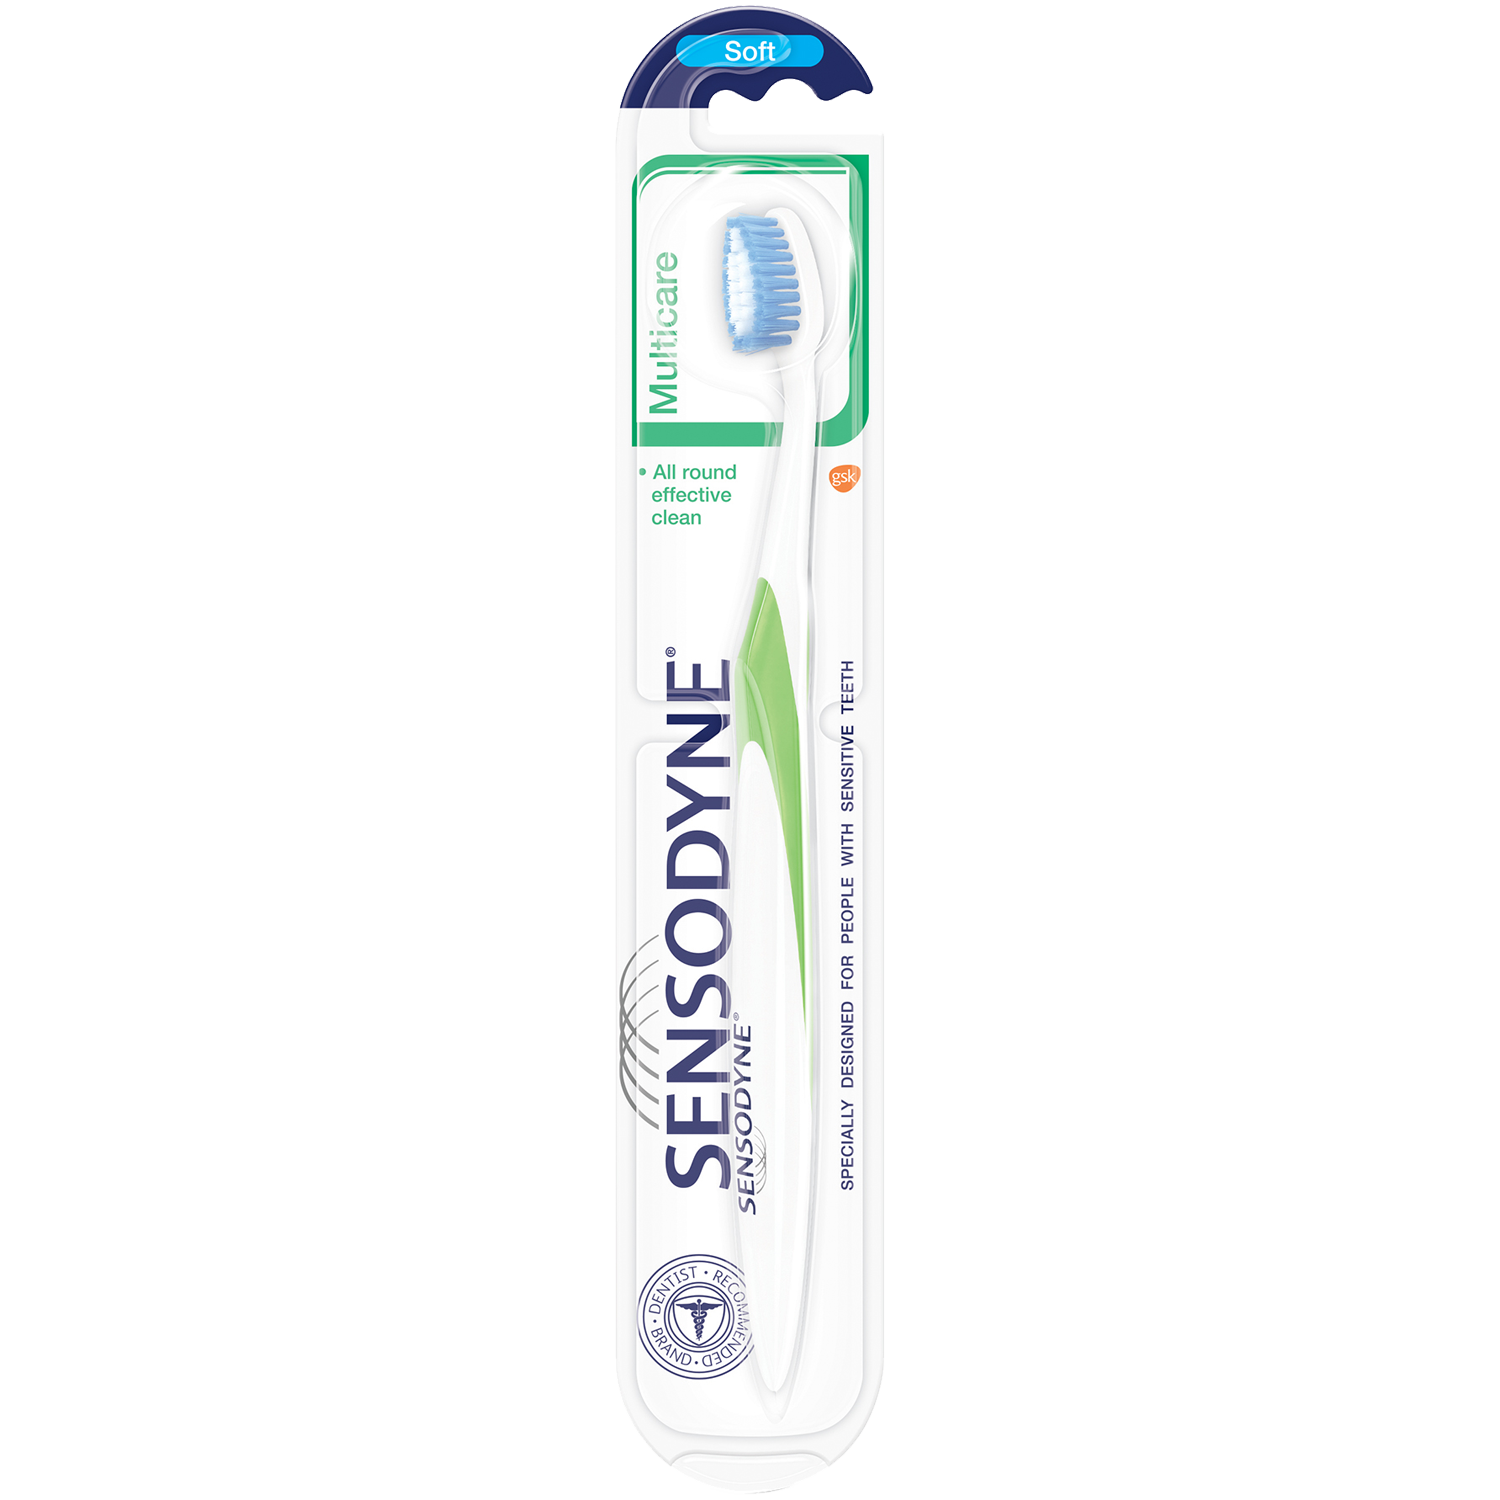 Sensodyne MultiCare зубная щетка мягкая, 1 шт. зубная щетка sensodyne multicare мягкая